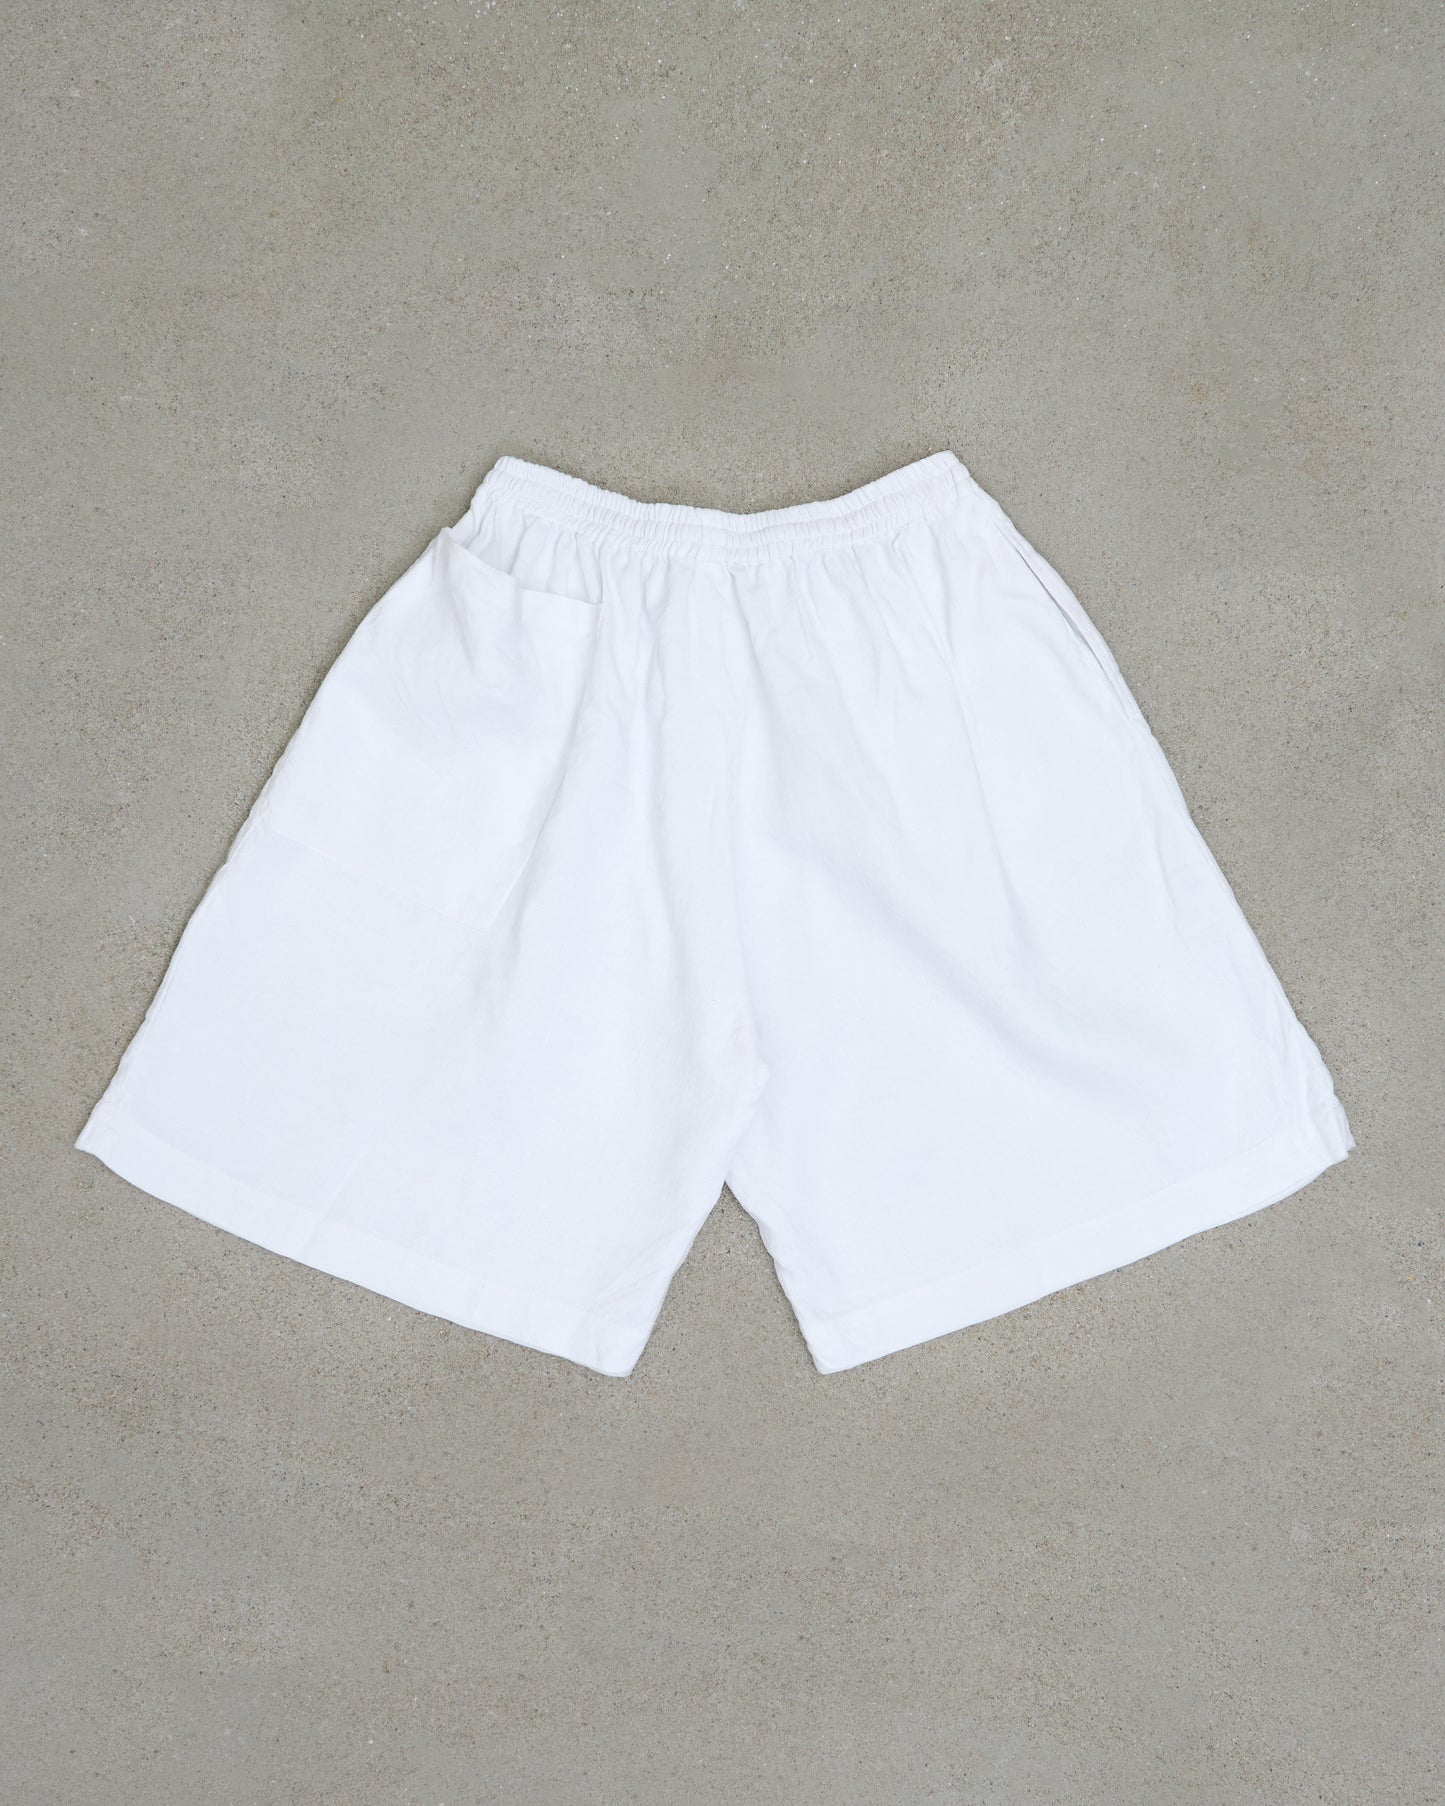 Hori Hori shorts - Repurposed Linen